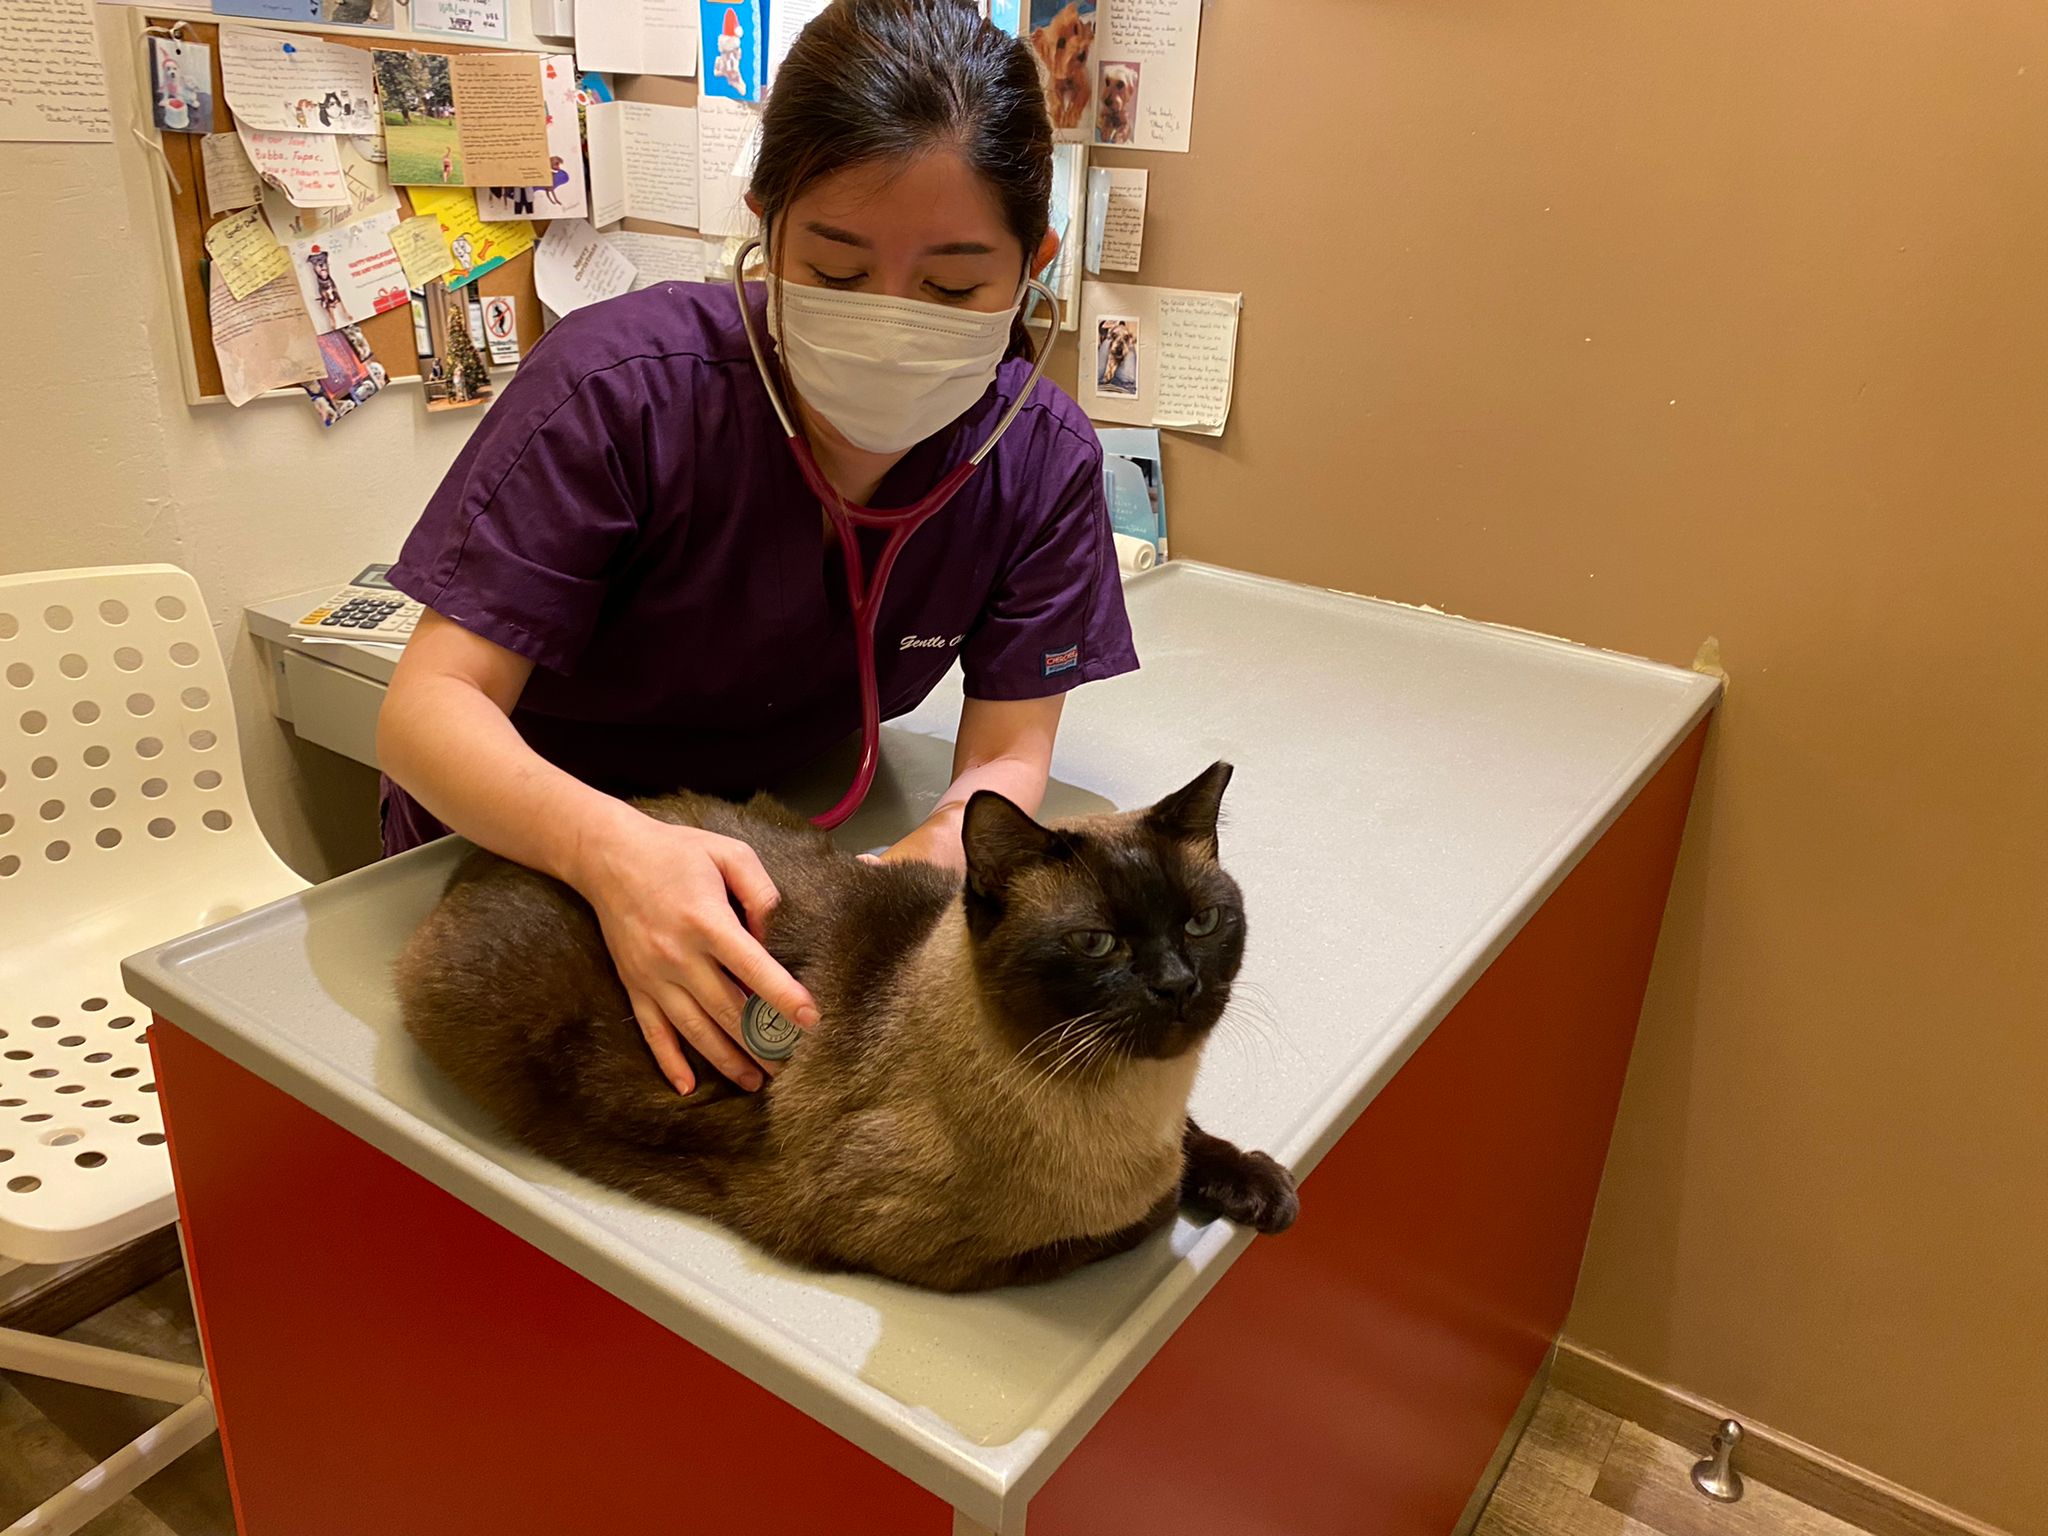 Journalist-turned-veterinarian Amanda Tan